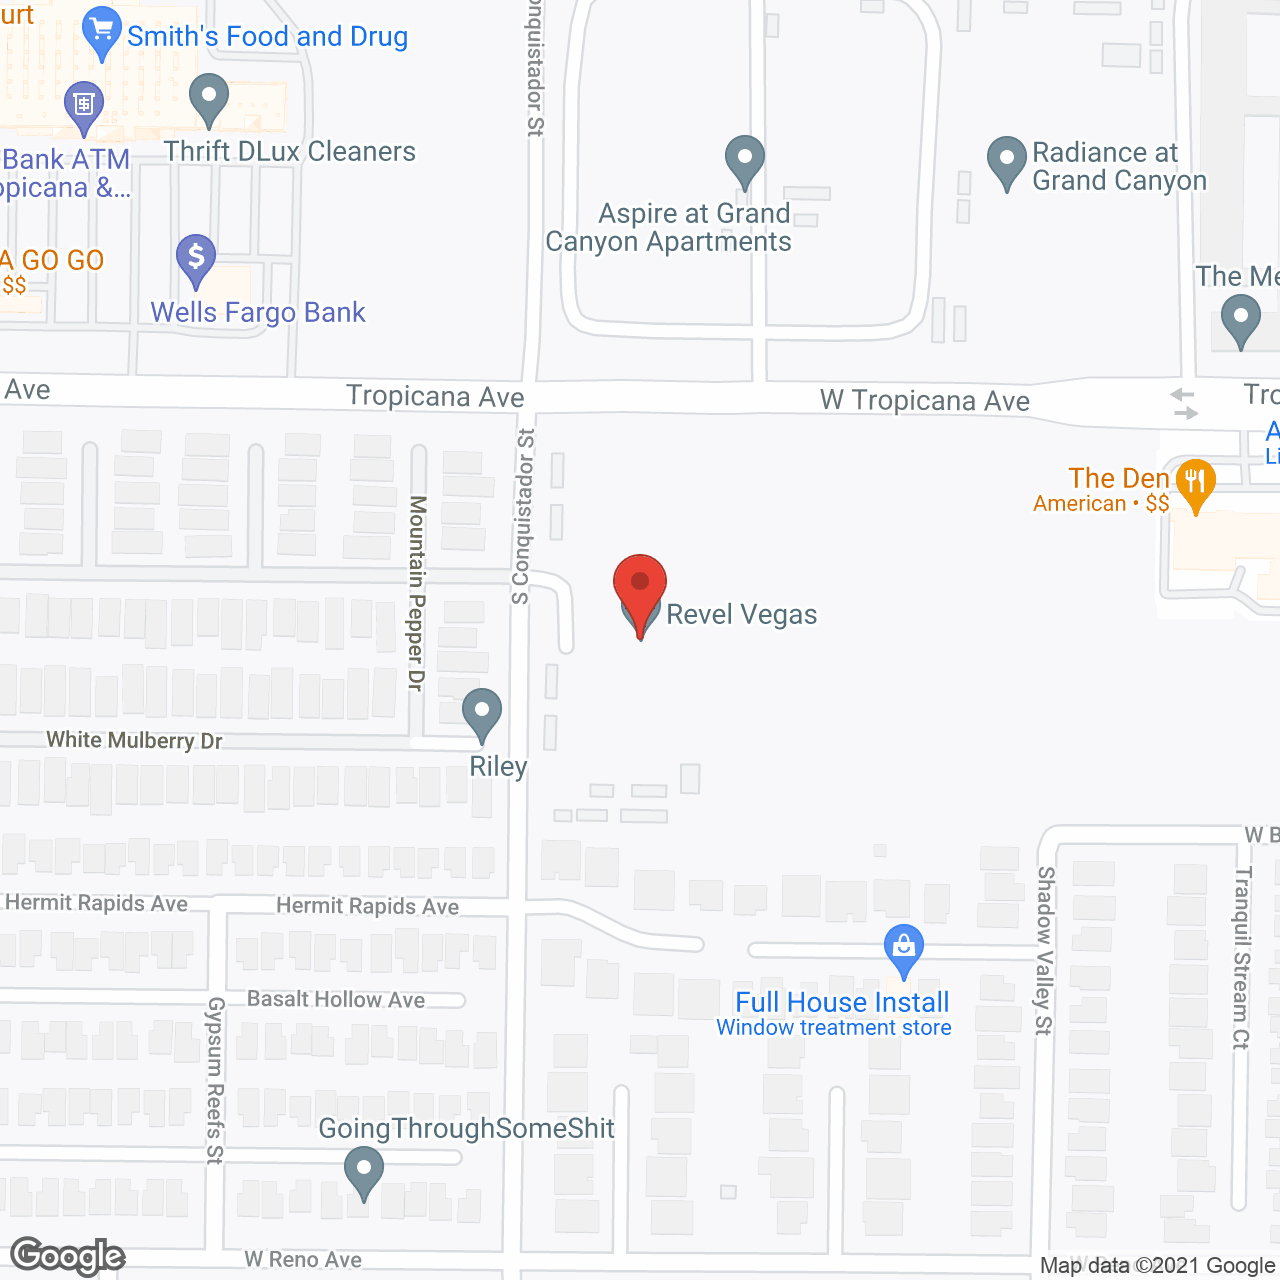 Revel Vegas in google map